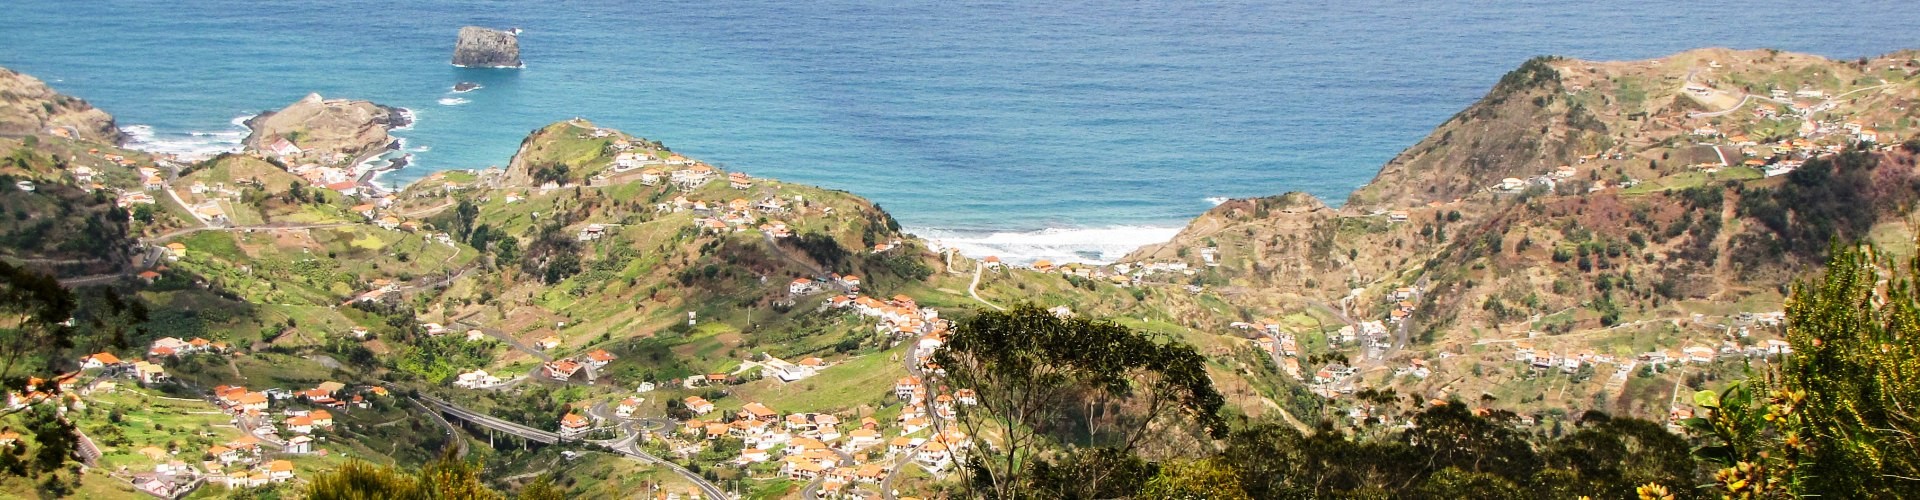 Porto da Cruz 2 Trail Tour Difícil na Ilha da Madeira